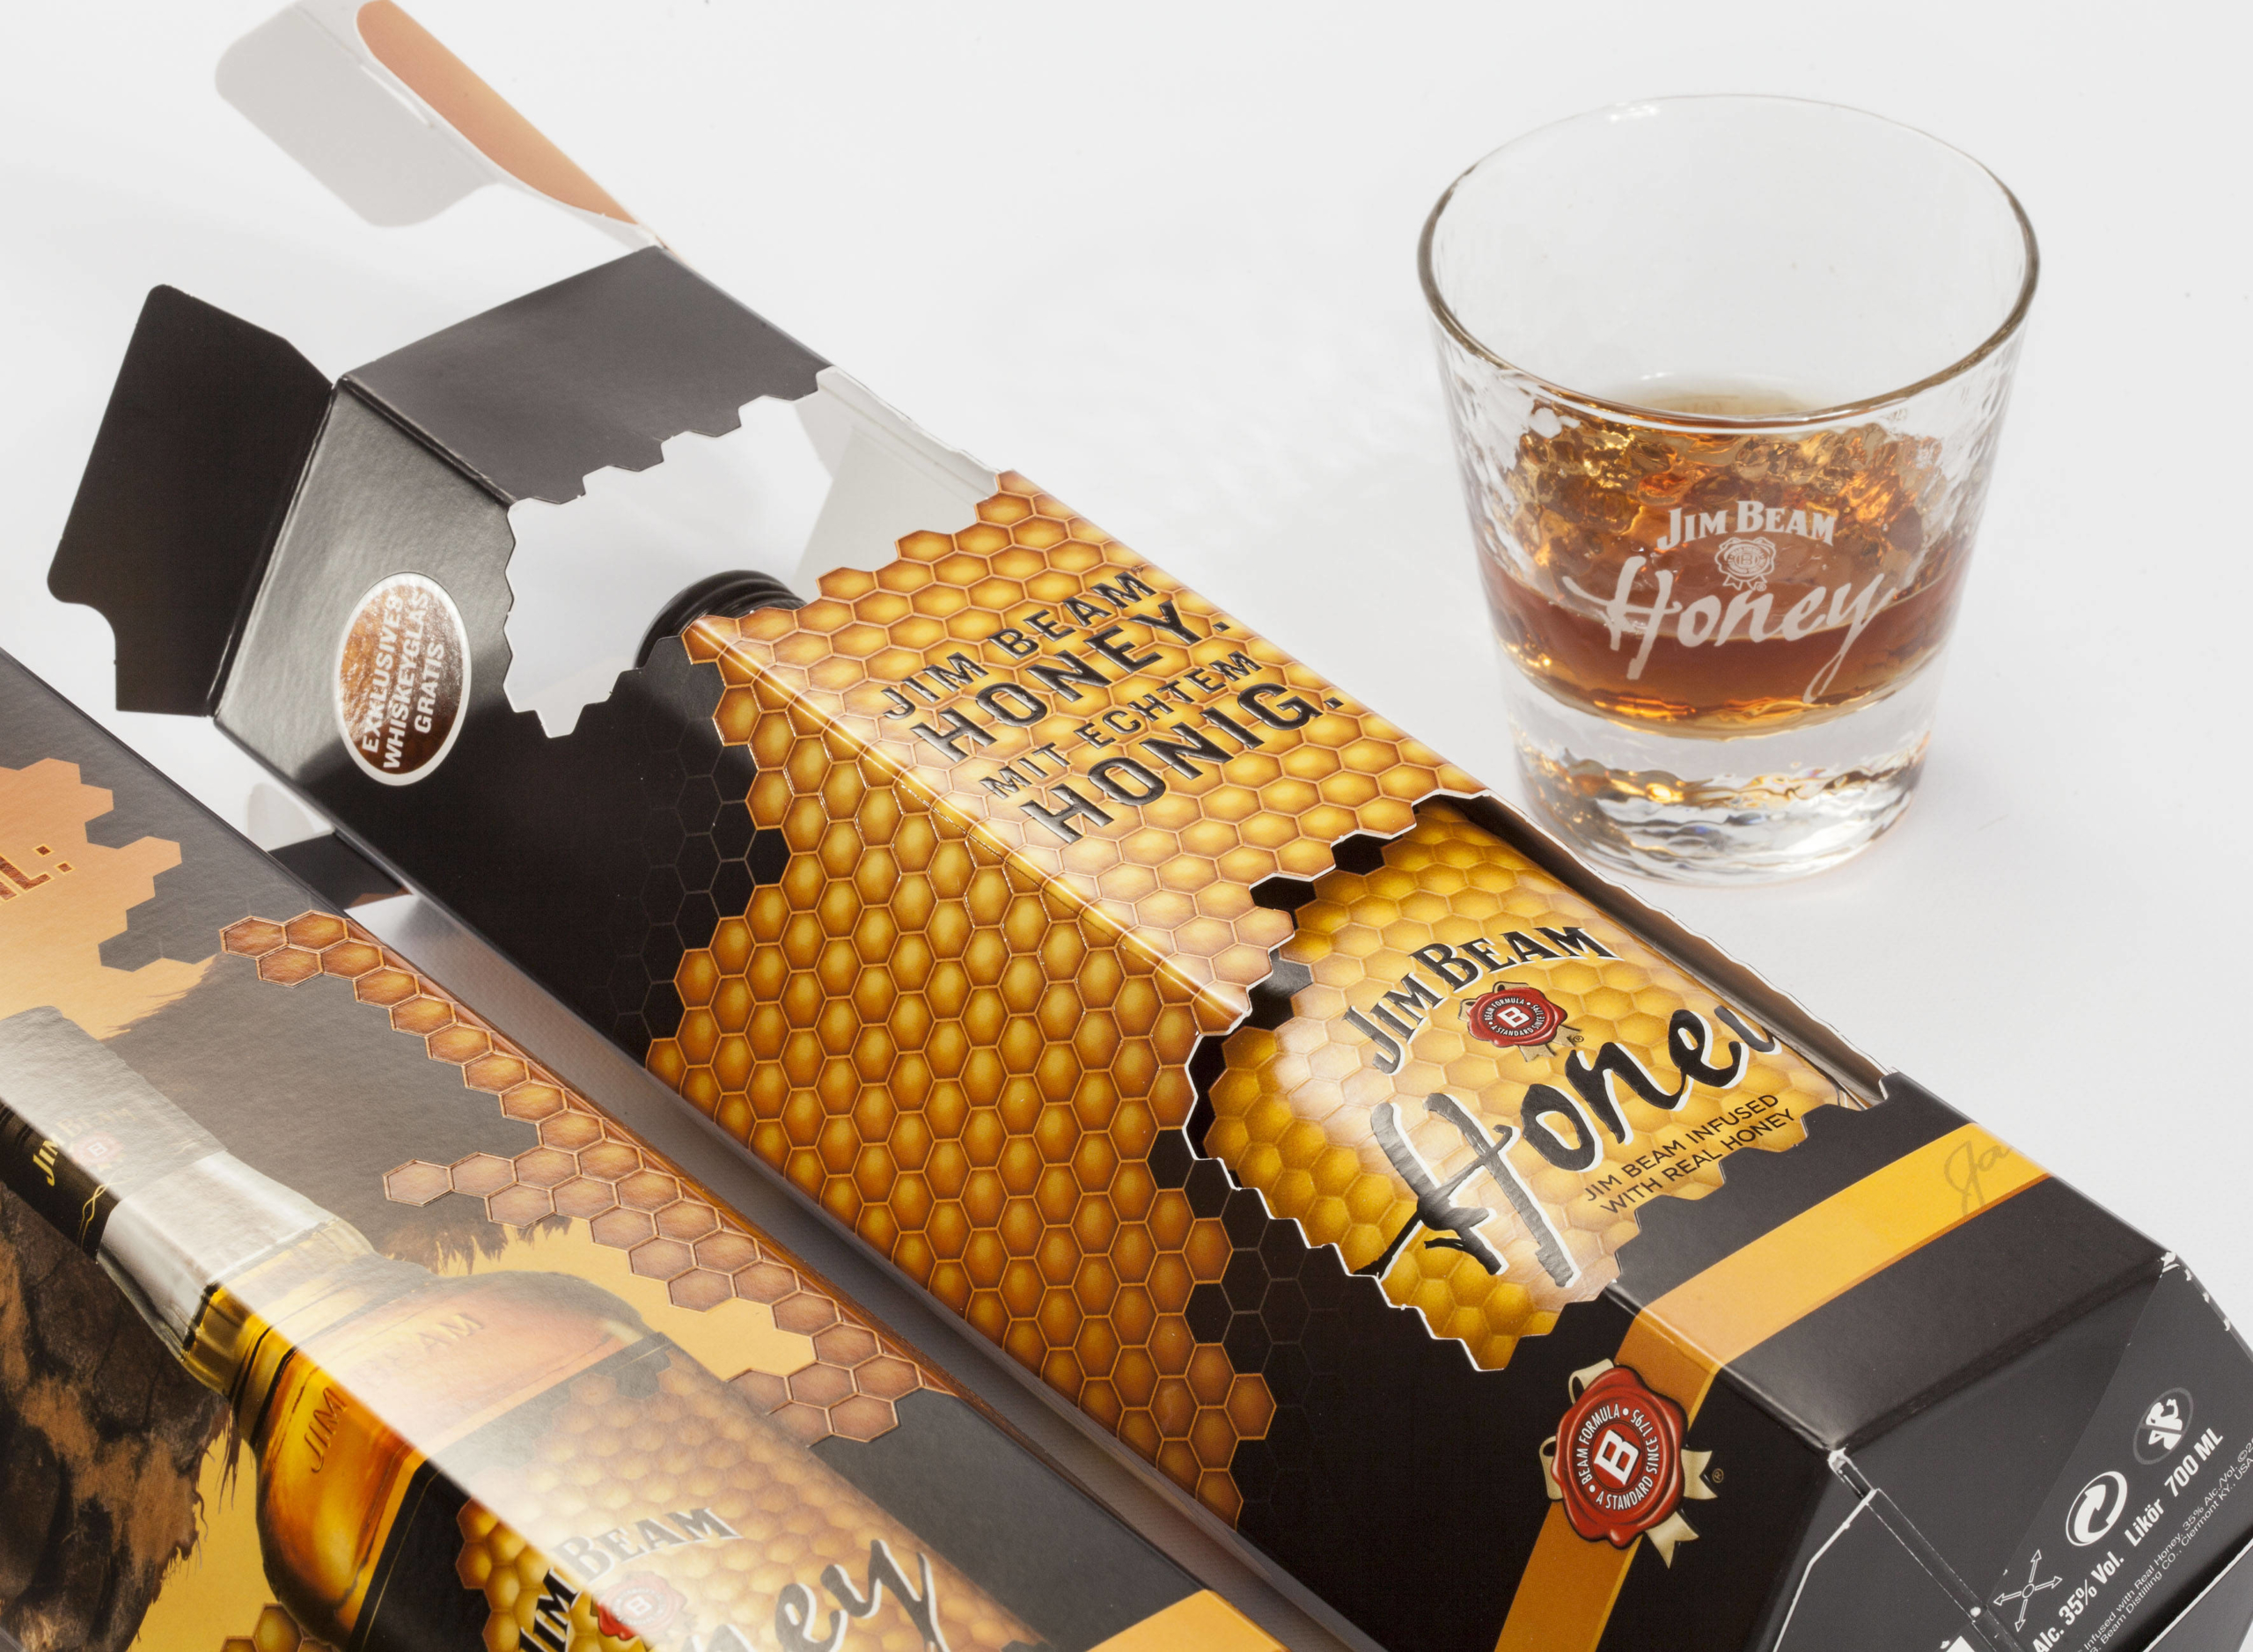 Imballaggio promozionale del miele Jim Beam